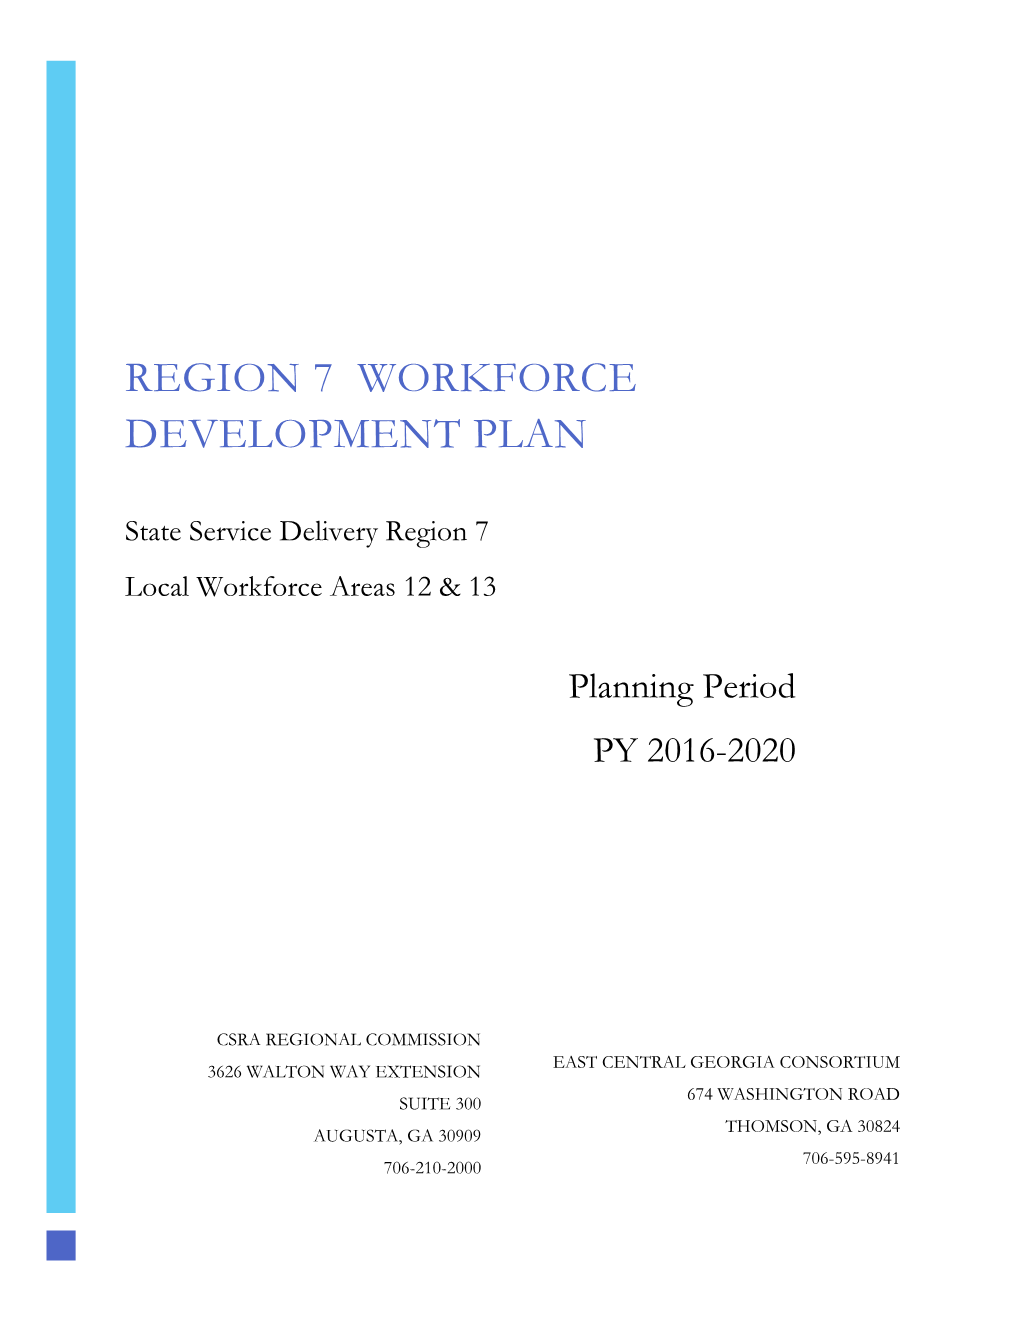 Region 7 Workforce Development Plan